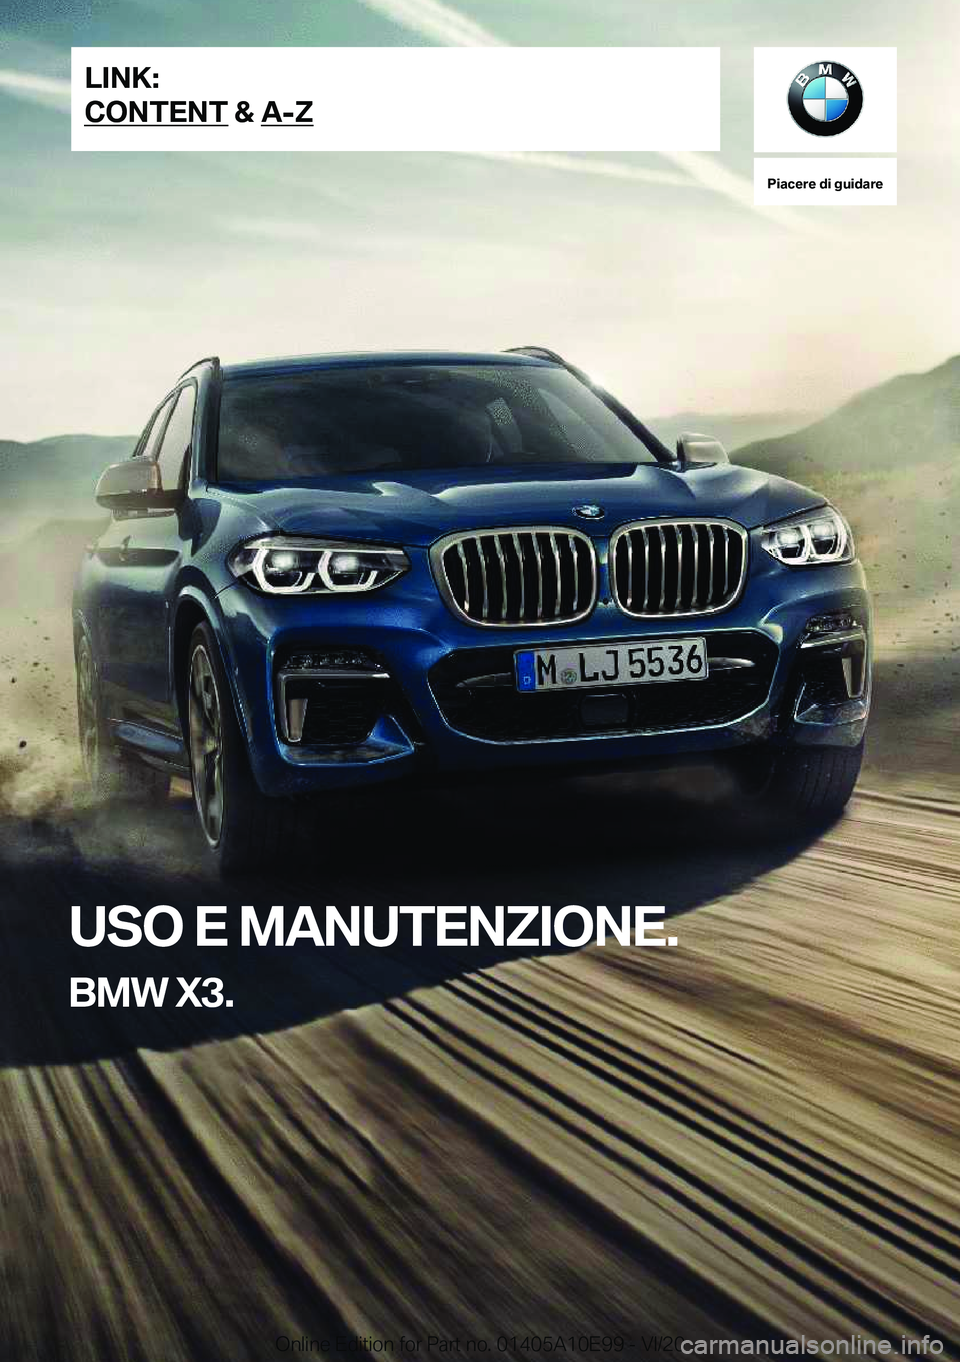 BMW X3 2021  Libretti Di Uso E manutenzione (in Italian) �P�i�a�c�e�r�e��d�i��g�u�i�d�a�r�e
�U�S�O��E��M�A�N�U�T�E�N�Z�I�O�N�E�.
�B�M�W��X�3�.�L�I�N�K�:
�C�O�N�T�E�N�T��&��A�-�Z�O�n�l�i�n�e��E�d�i�t�i�o�n��f�o�r��P�a�r�t��n�o�.��0�1�4�0�5�A�1�0�